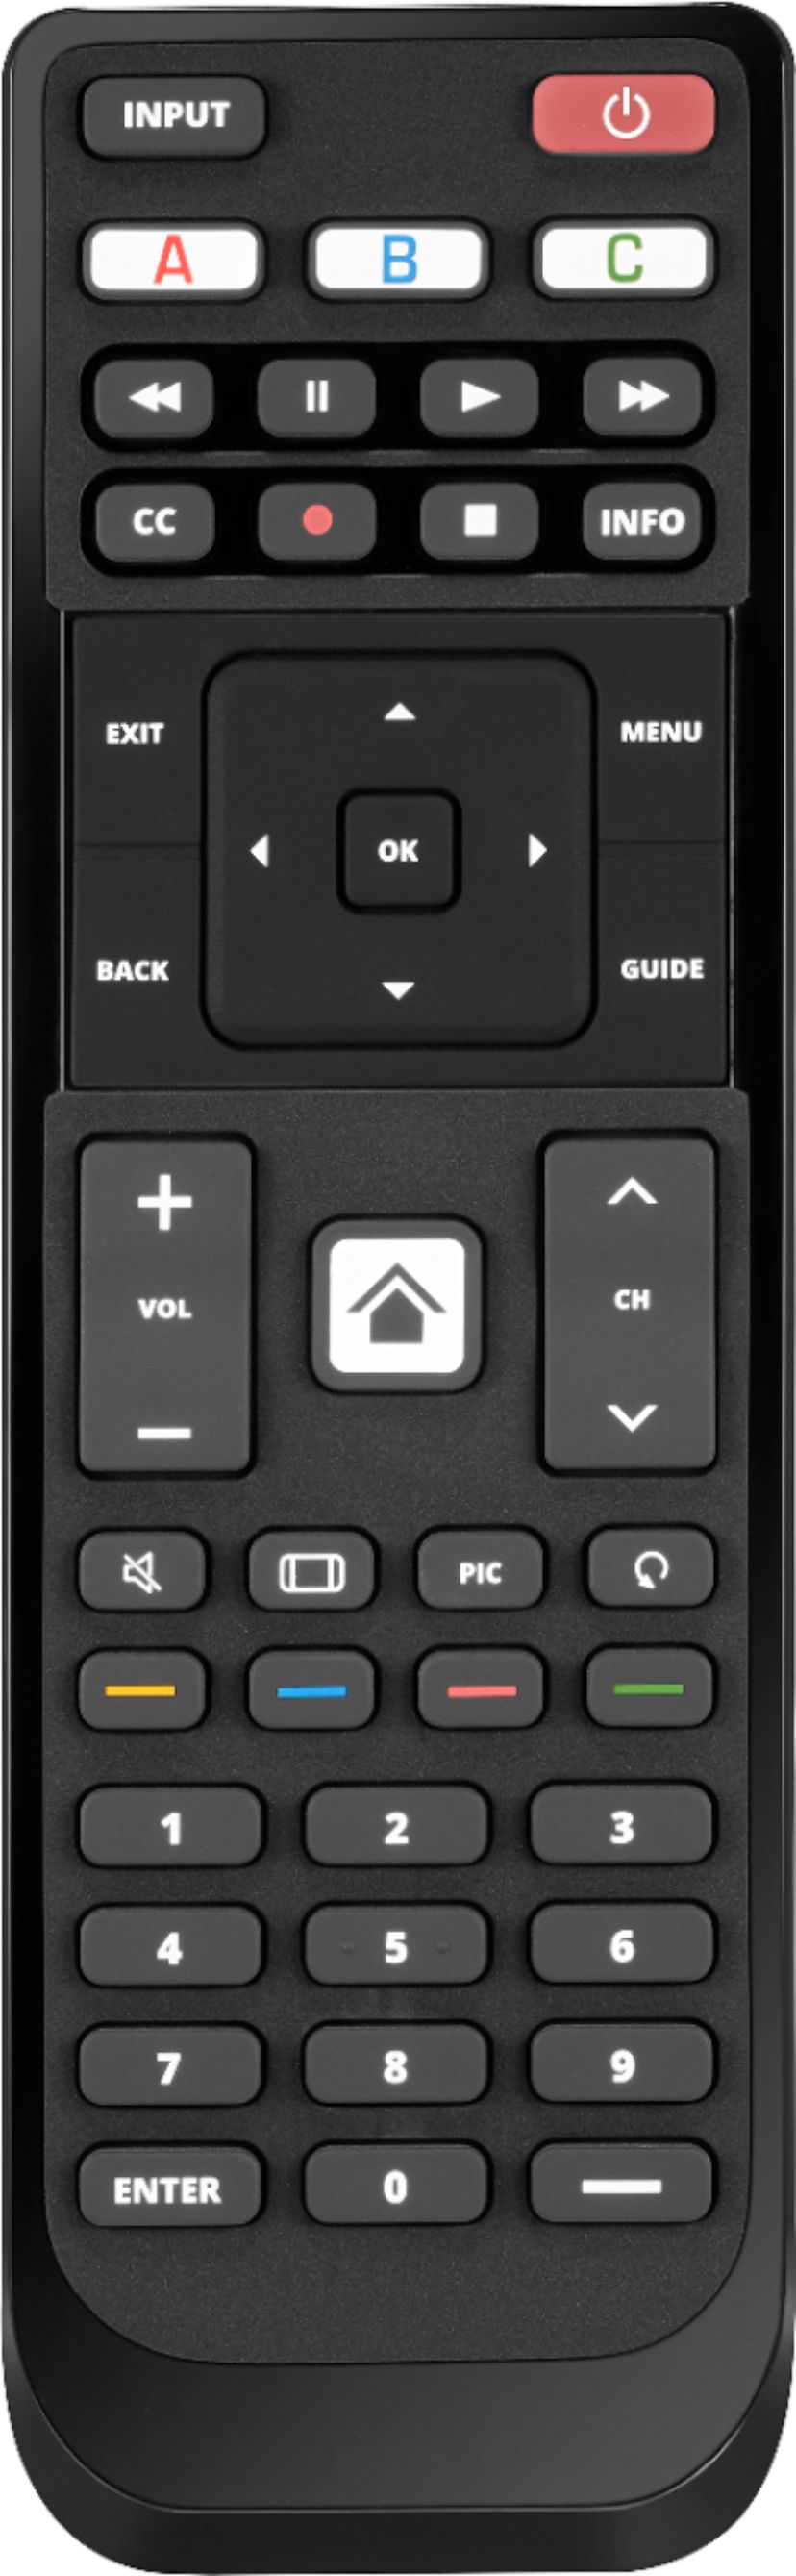 Angle View: Insignia™ - Replacement Remote for Vizio TVs - Black